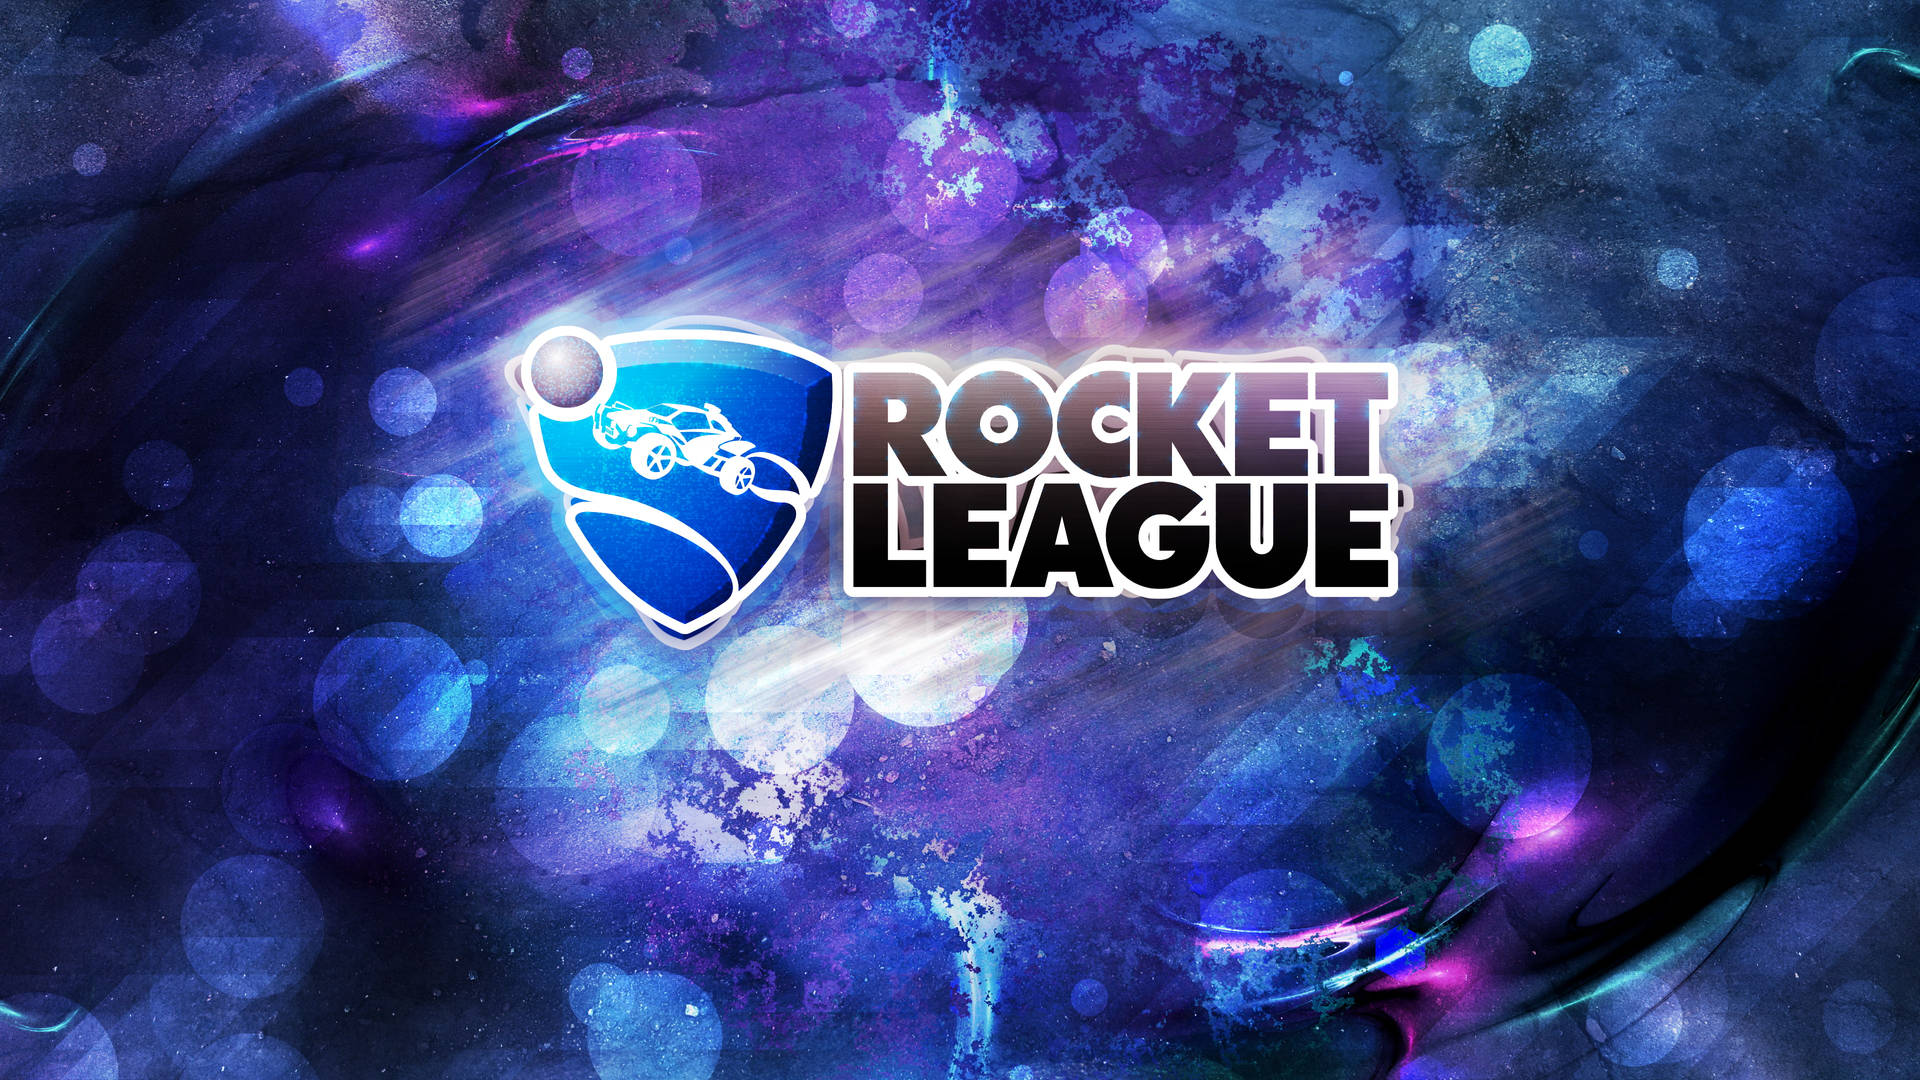 Rocket League Hd Logo Background